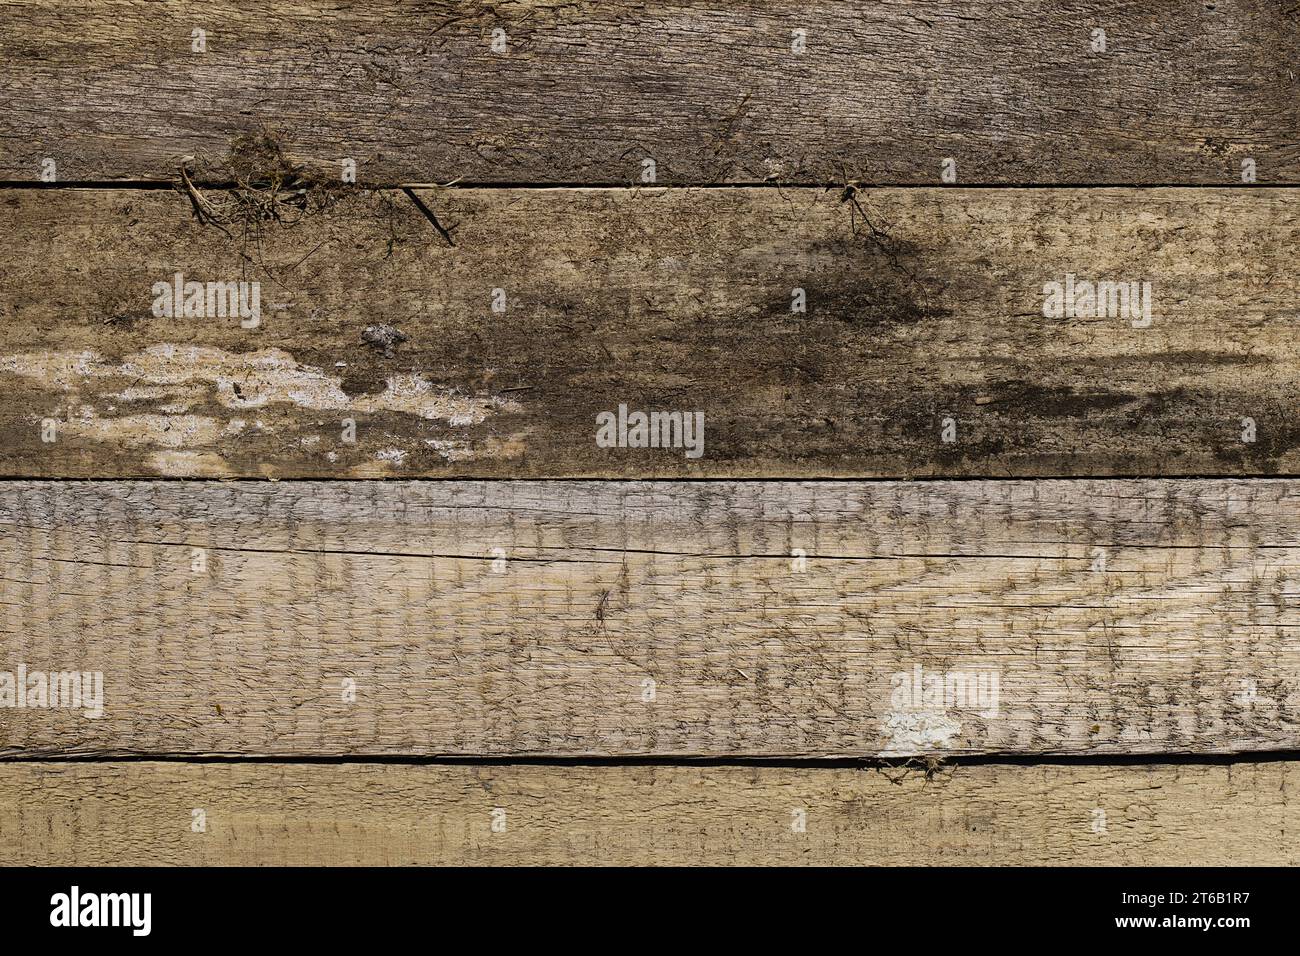 Un'immagine accattivante con tavole di pino invecchiate disposte in modo uniforme, che mostrano una gamma di colori del legno influenzati dagli elementi: Pioggia, sole e vento. La Foto Stock